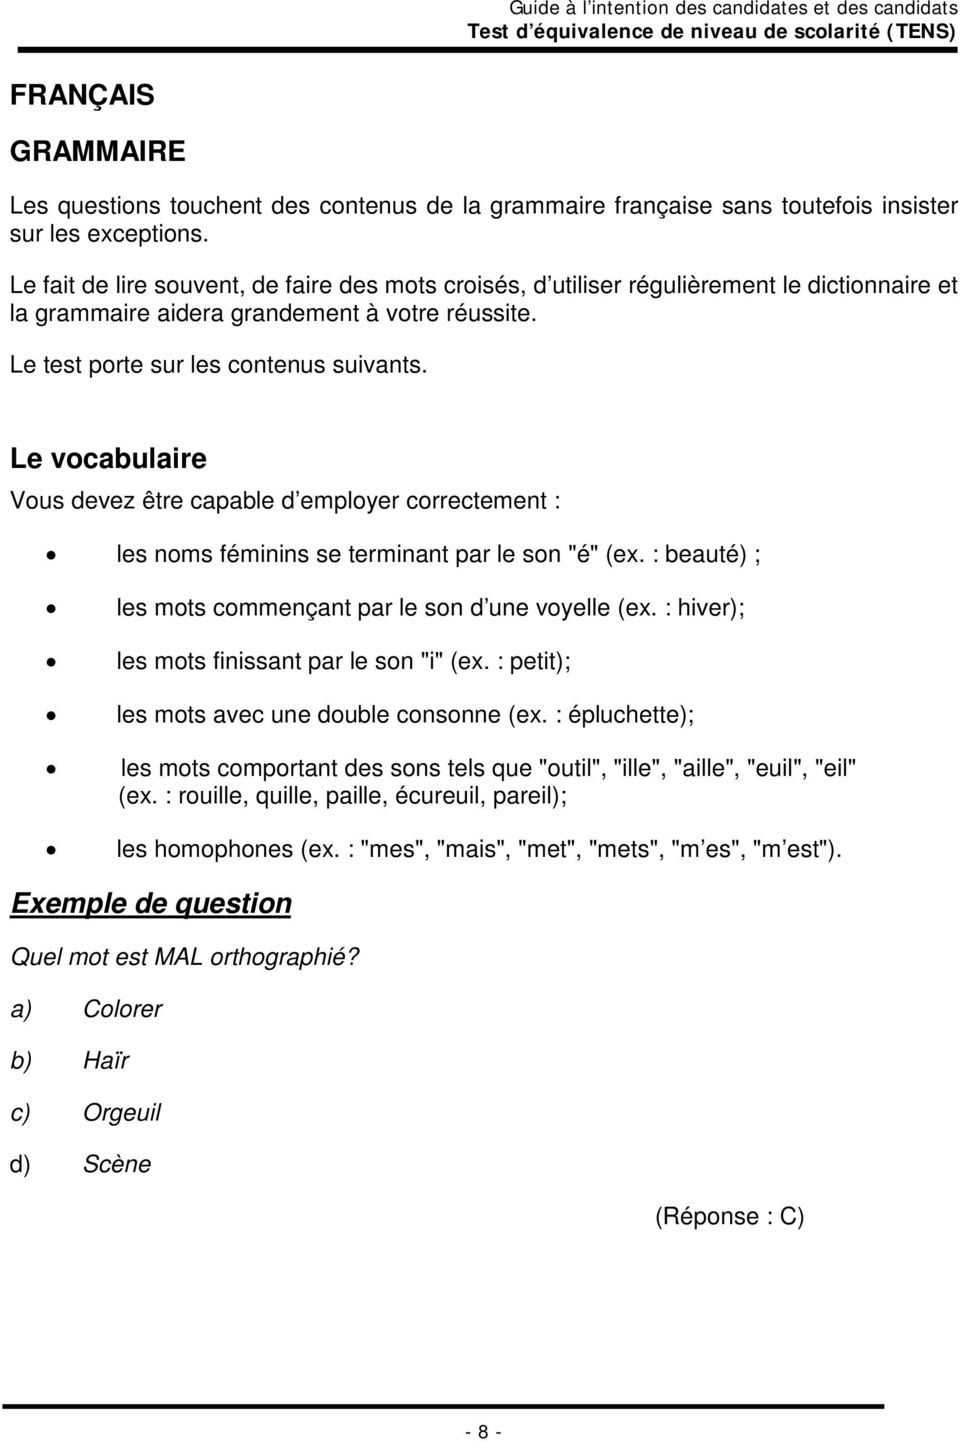 PDF Télécharger tens exercices préparatoire aux tens Gratuit PDF |  PDFprof.com